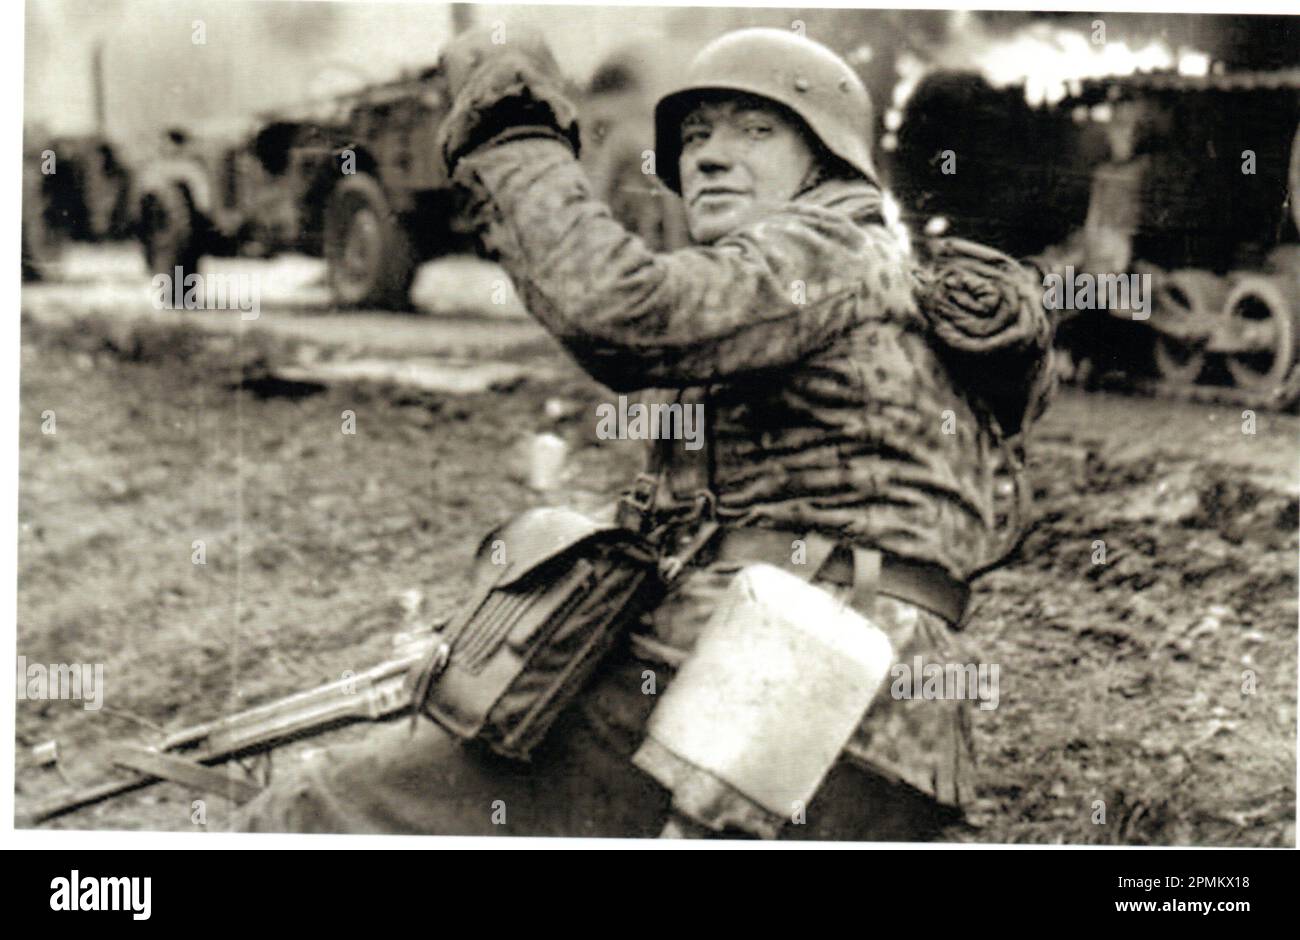 World war Two B&W Foto Ein deutscher Soldat macht während der Ardennenoffensive 1945 Fortschritte . Der Mann ist aus der 1. SS Panzer Division, gekleidet in einer Dot Camo Jacke, bewaffnet mit einem Angriffsgewehr Stg44 Stockfoto